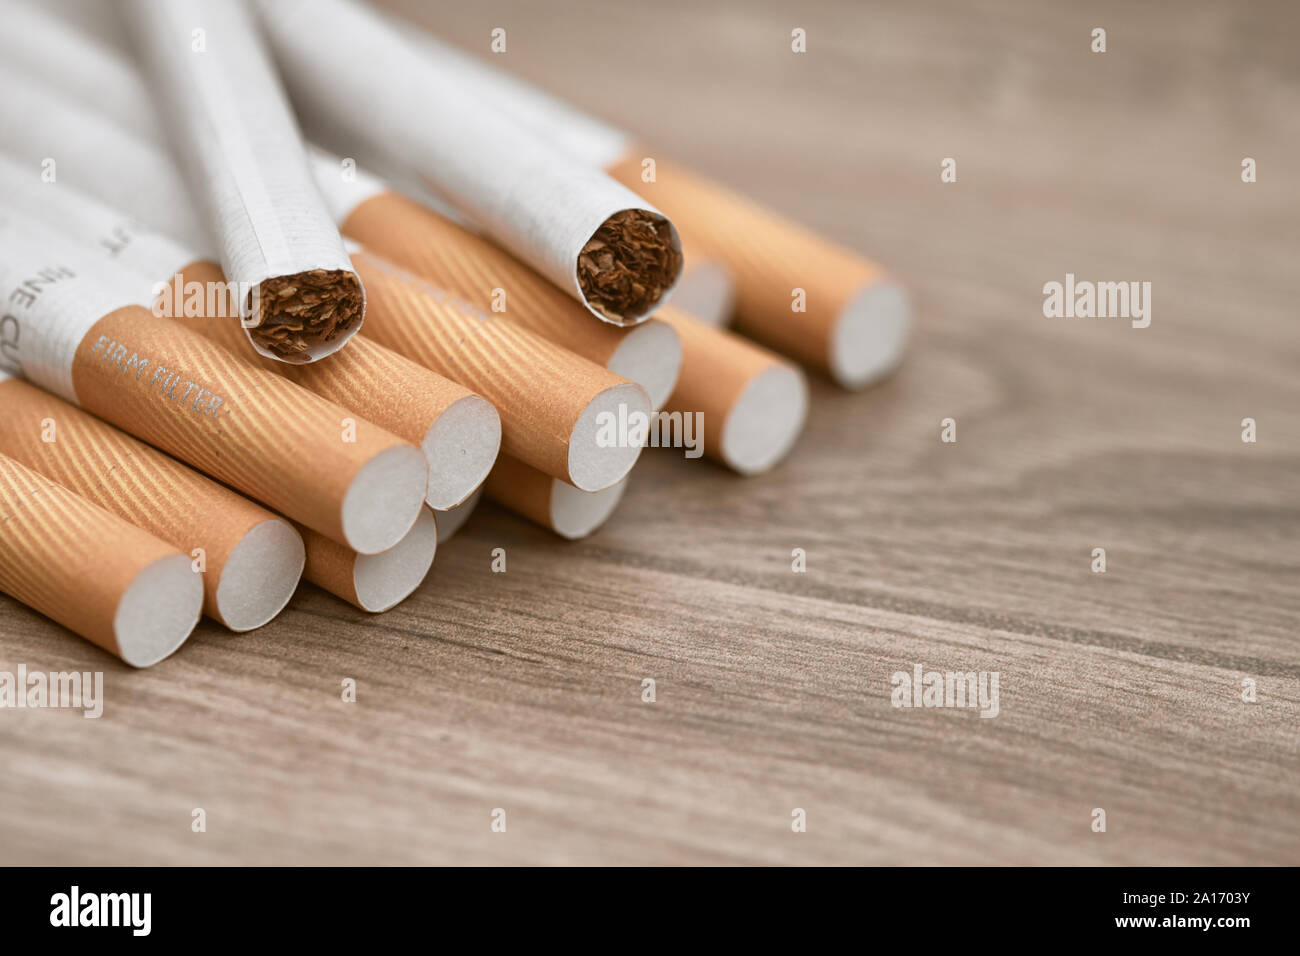 Les cigarettes de tabac sur une table en bois Banque D'Images